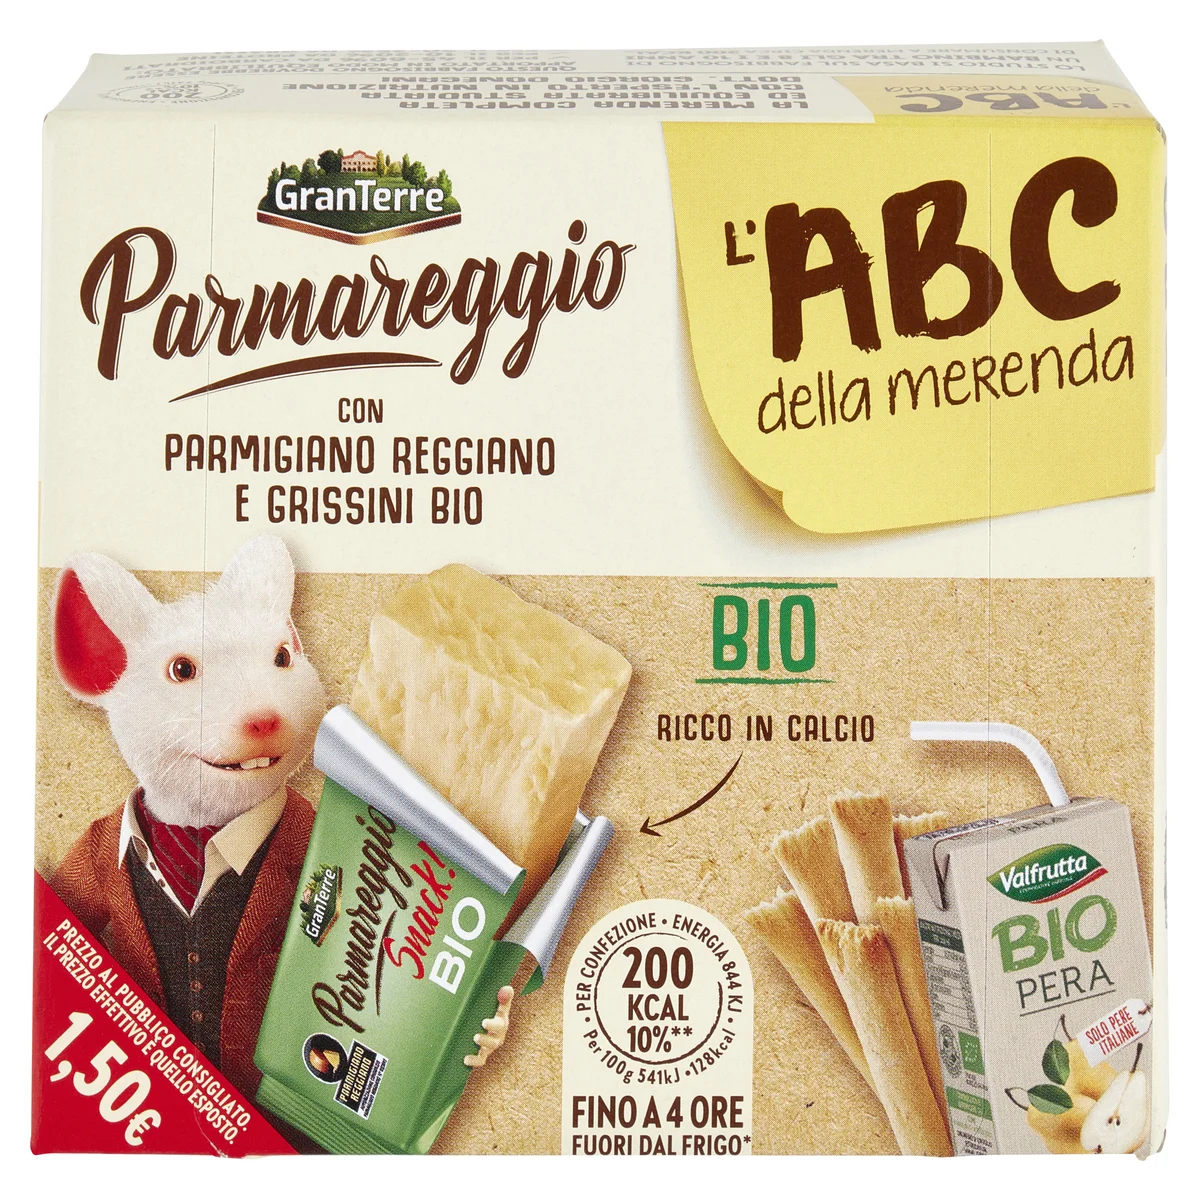 Parmareggio l'ABC della merenda Bio